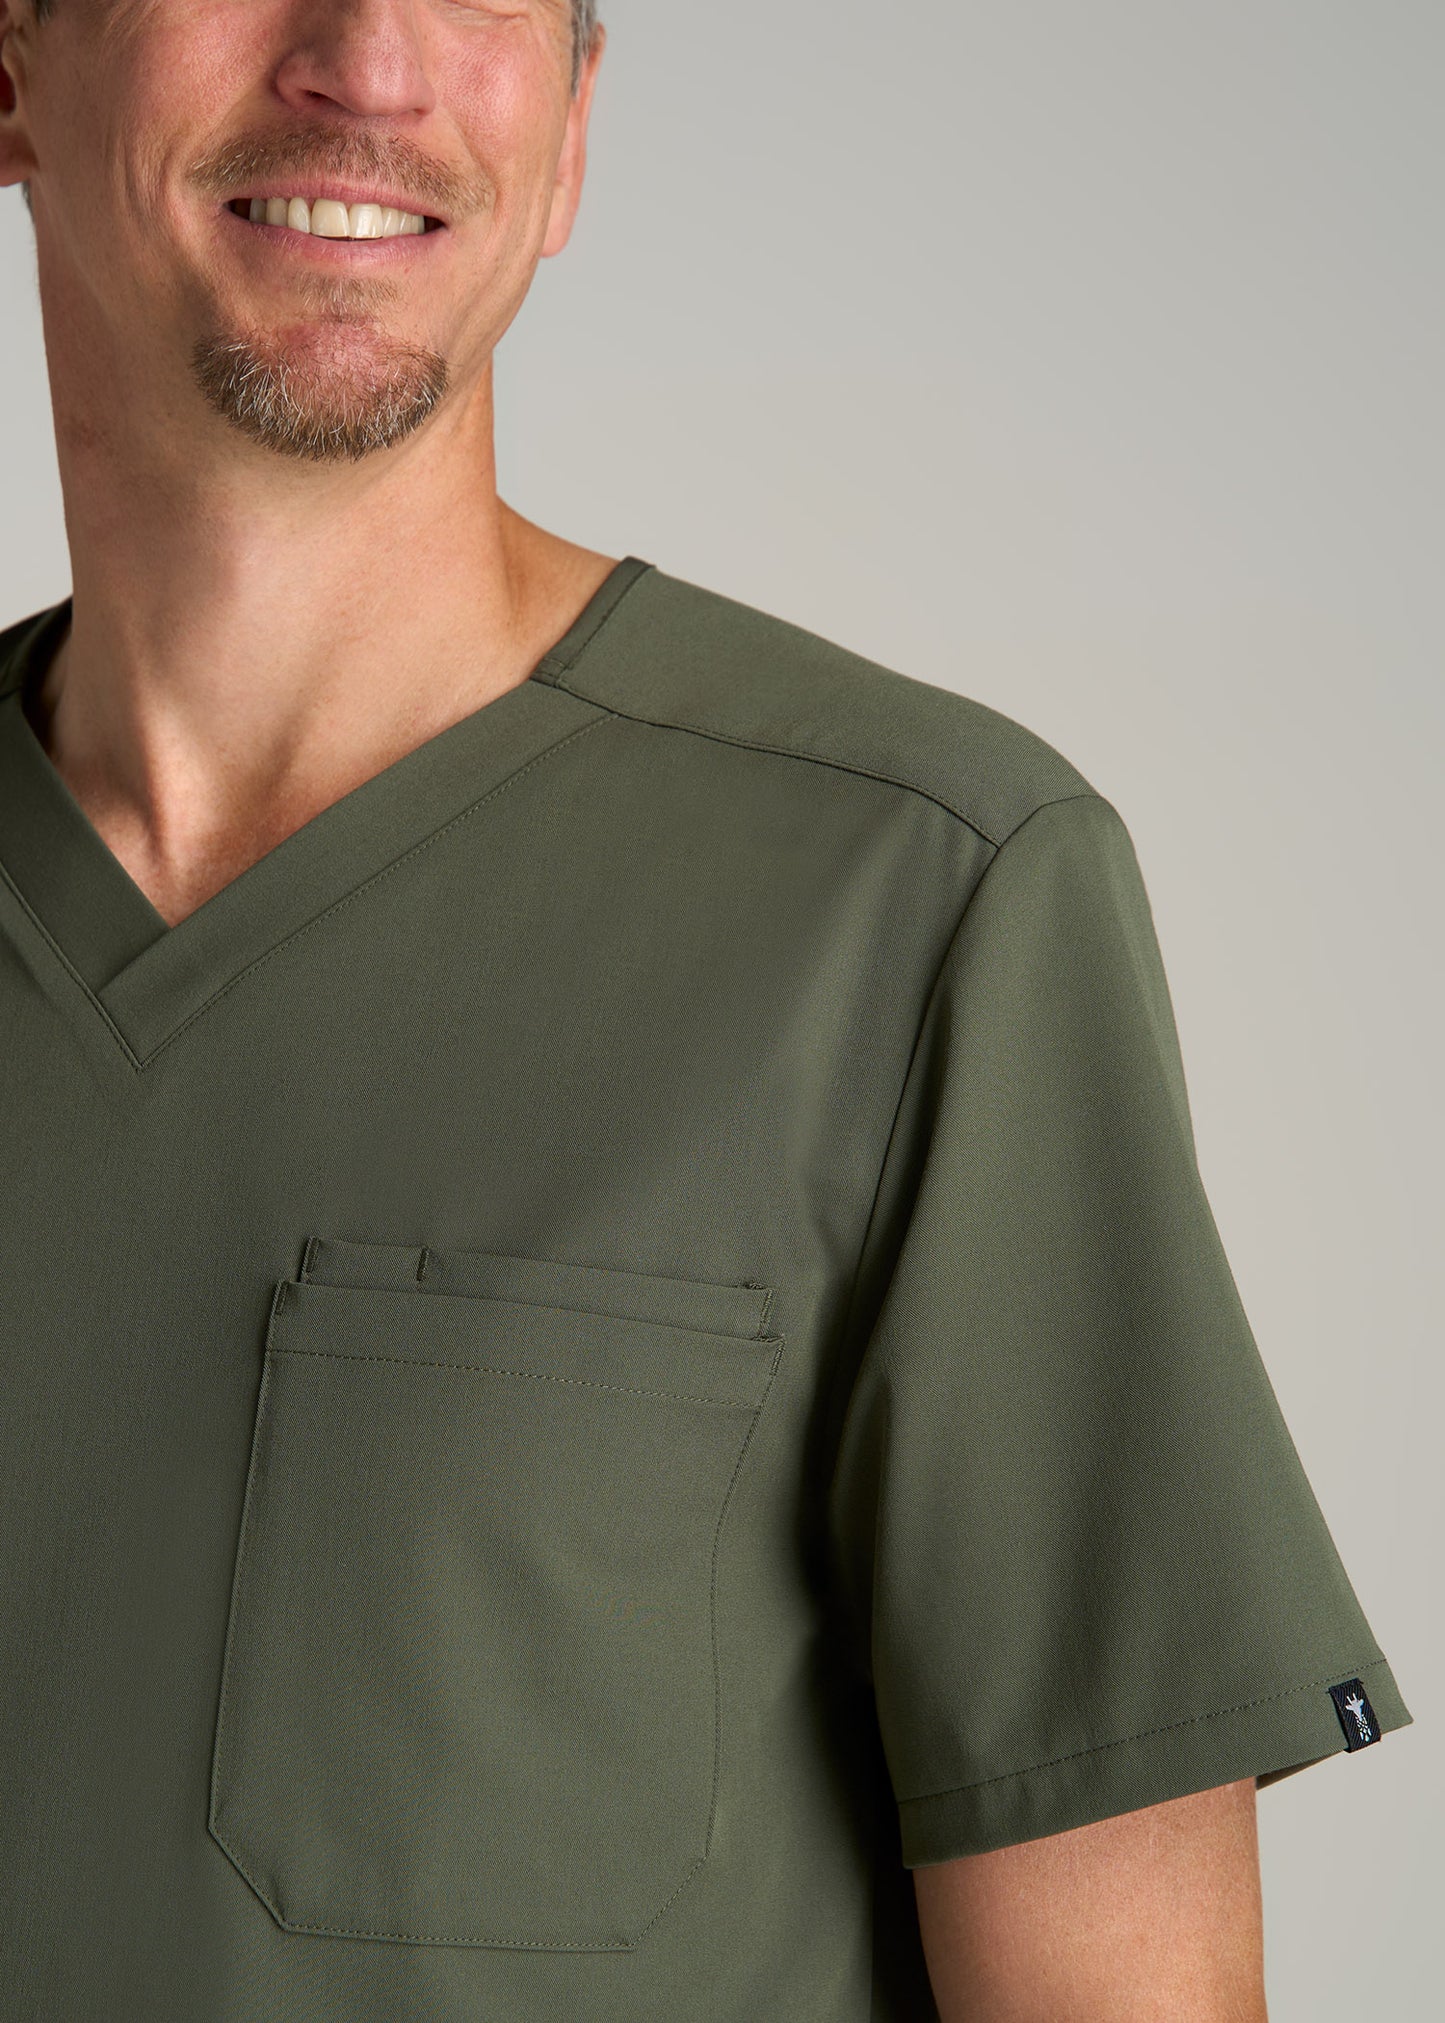 Short-Sleeve V-Neck Scrub Top for Tall Men in Clover Green